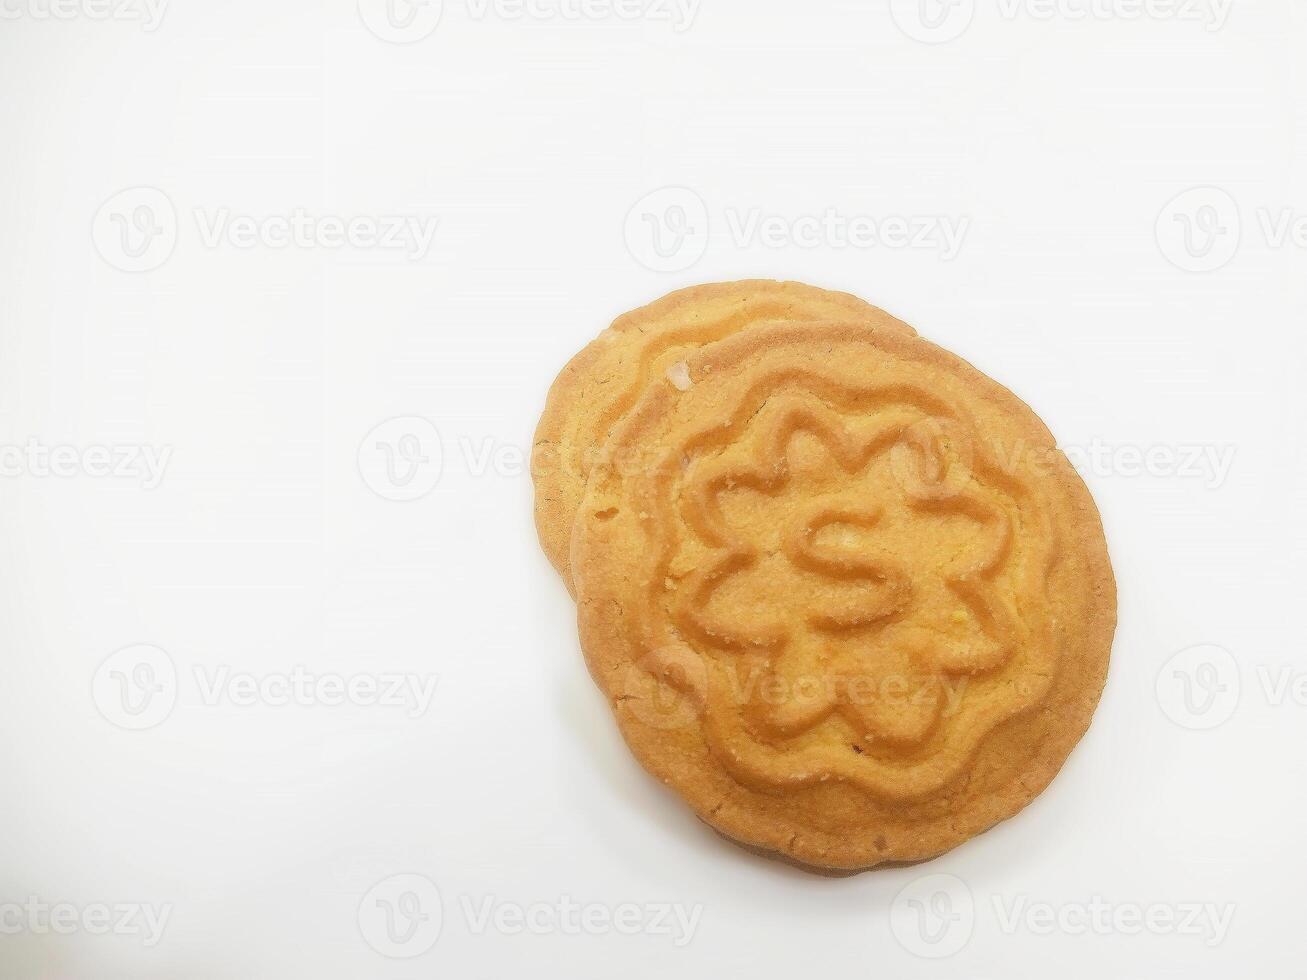 Weizen Kekse Kekse - - ein Stapel von köstlich Weizen runden Kekse mit ein wenige Krümel isoliert auf Weiß foto